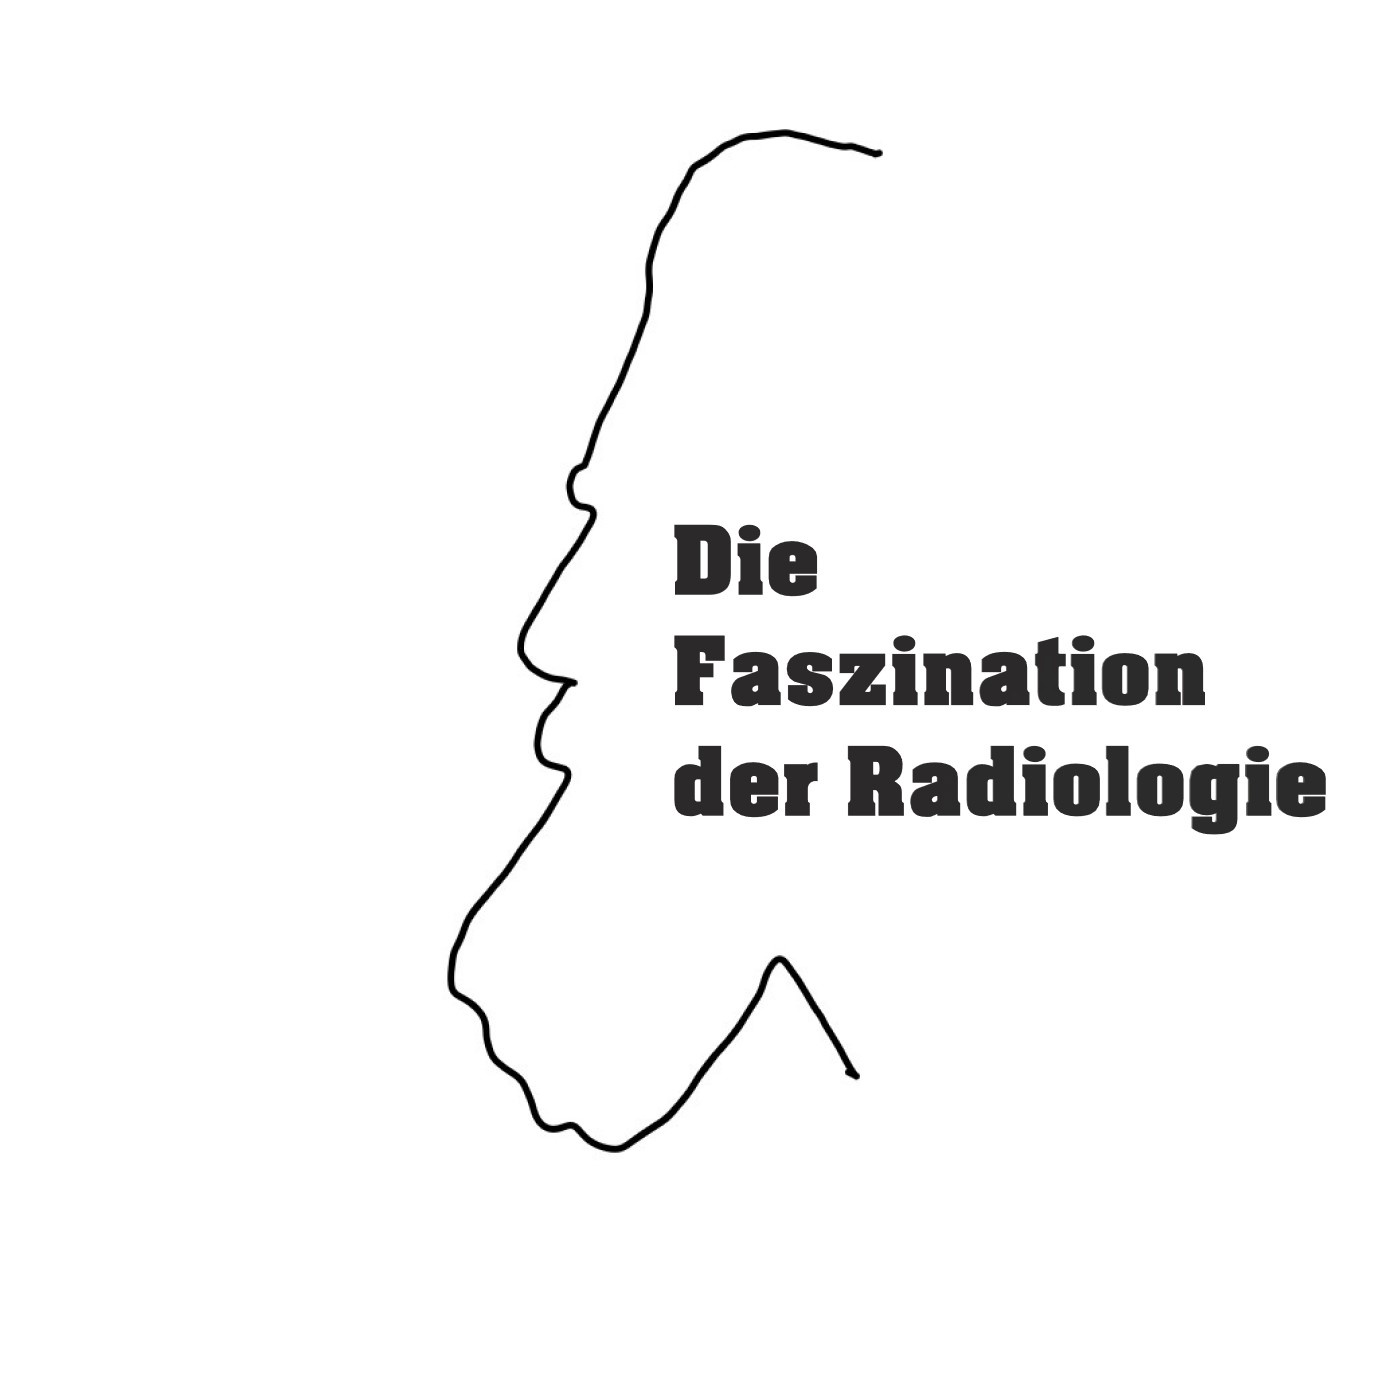 Die Faszination der Radiologie!